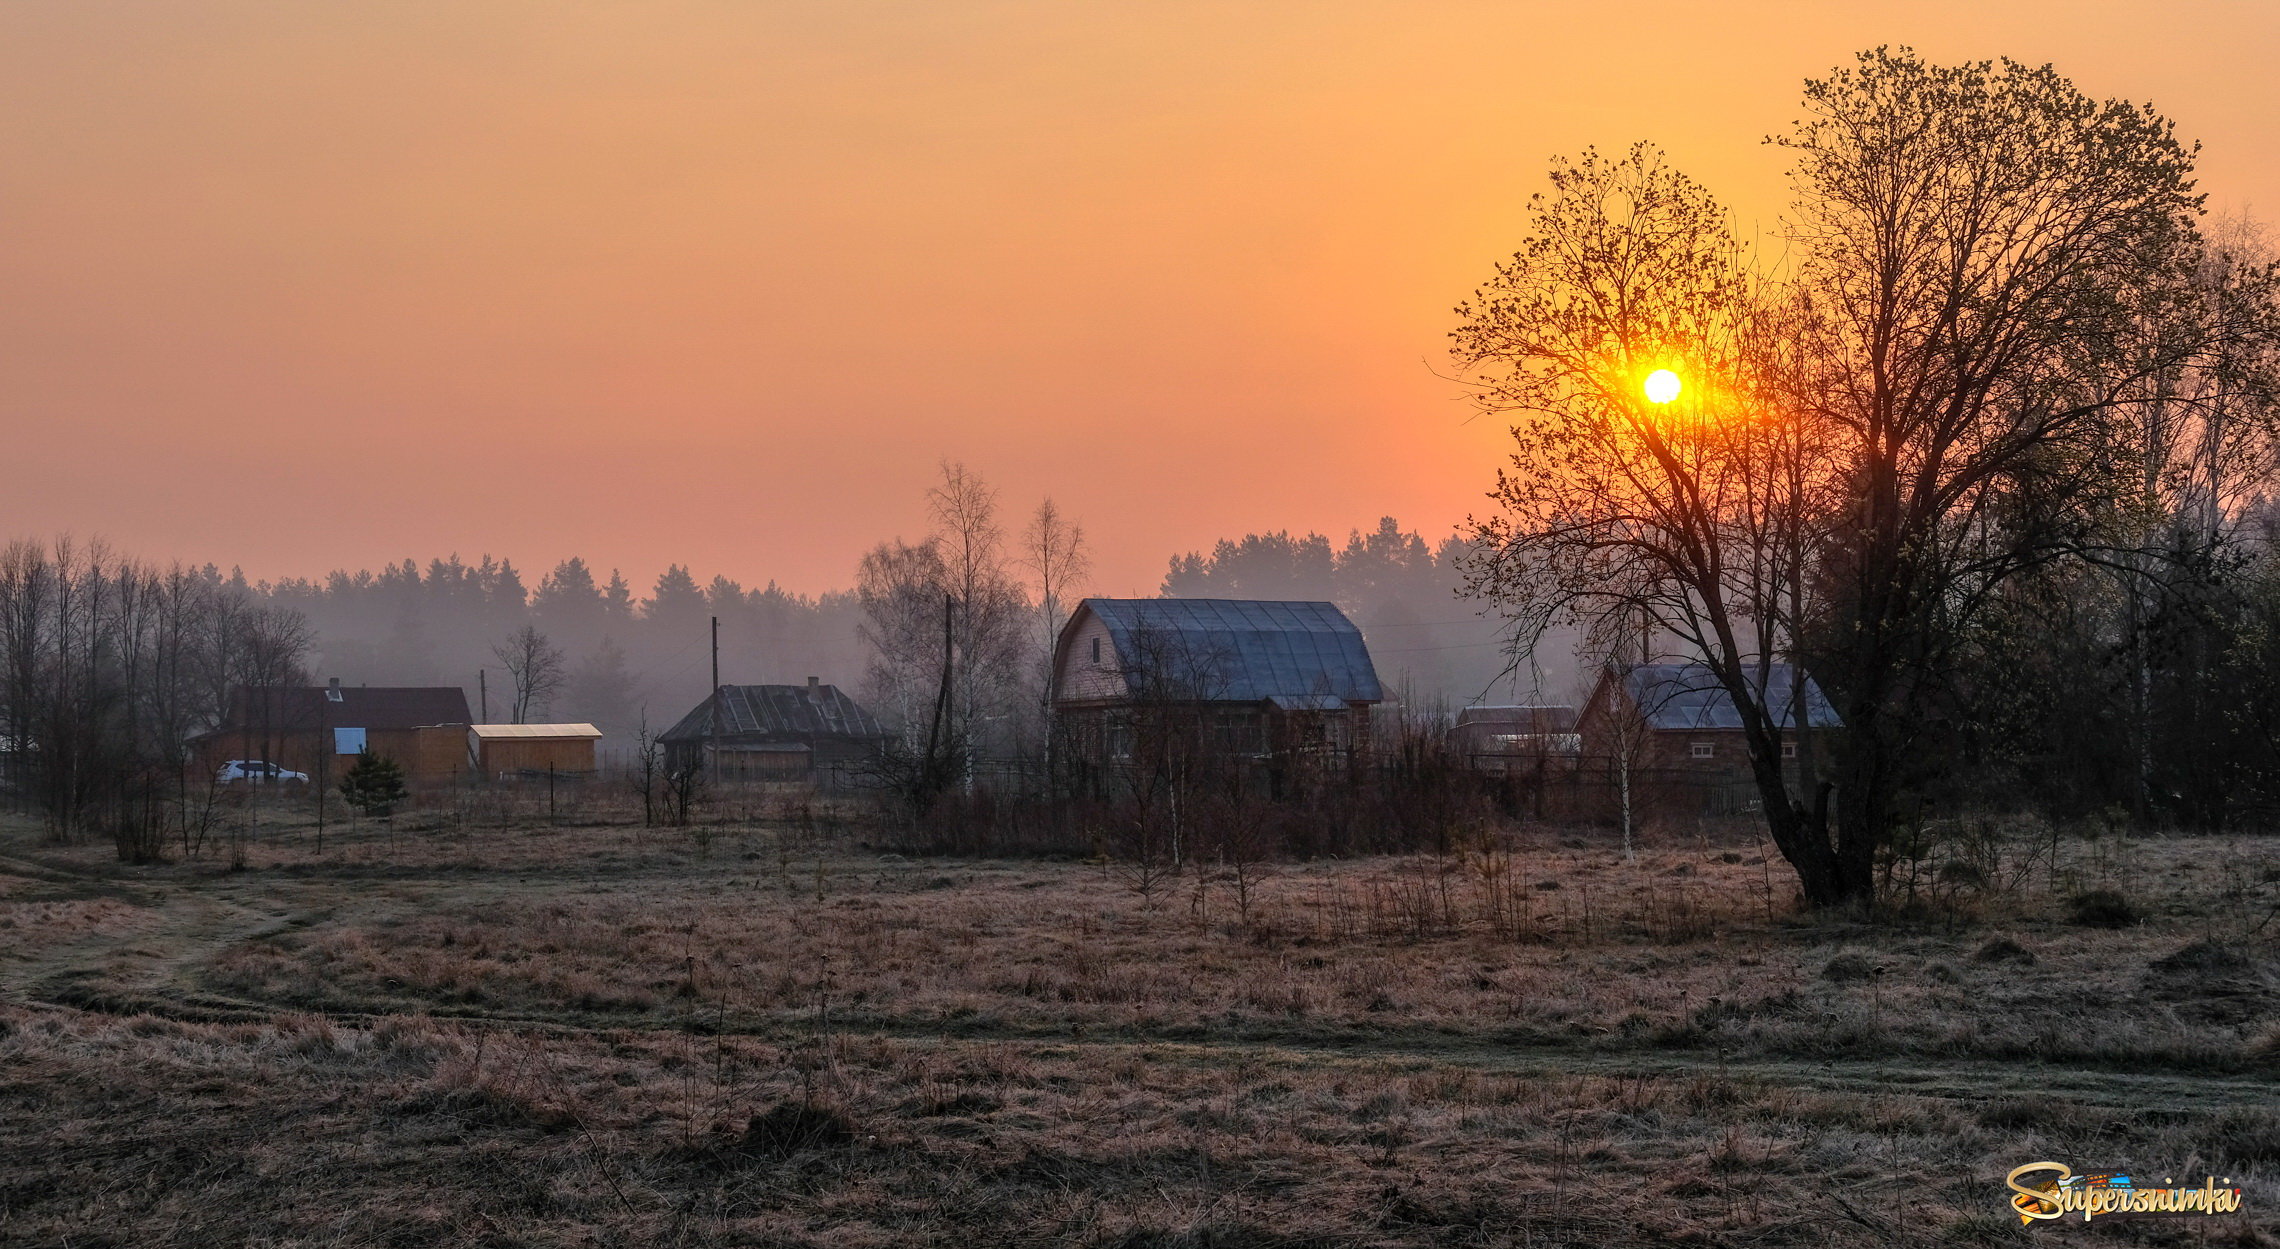 Апрельский восход в деревне